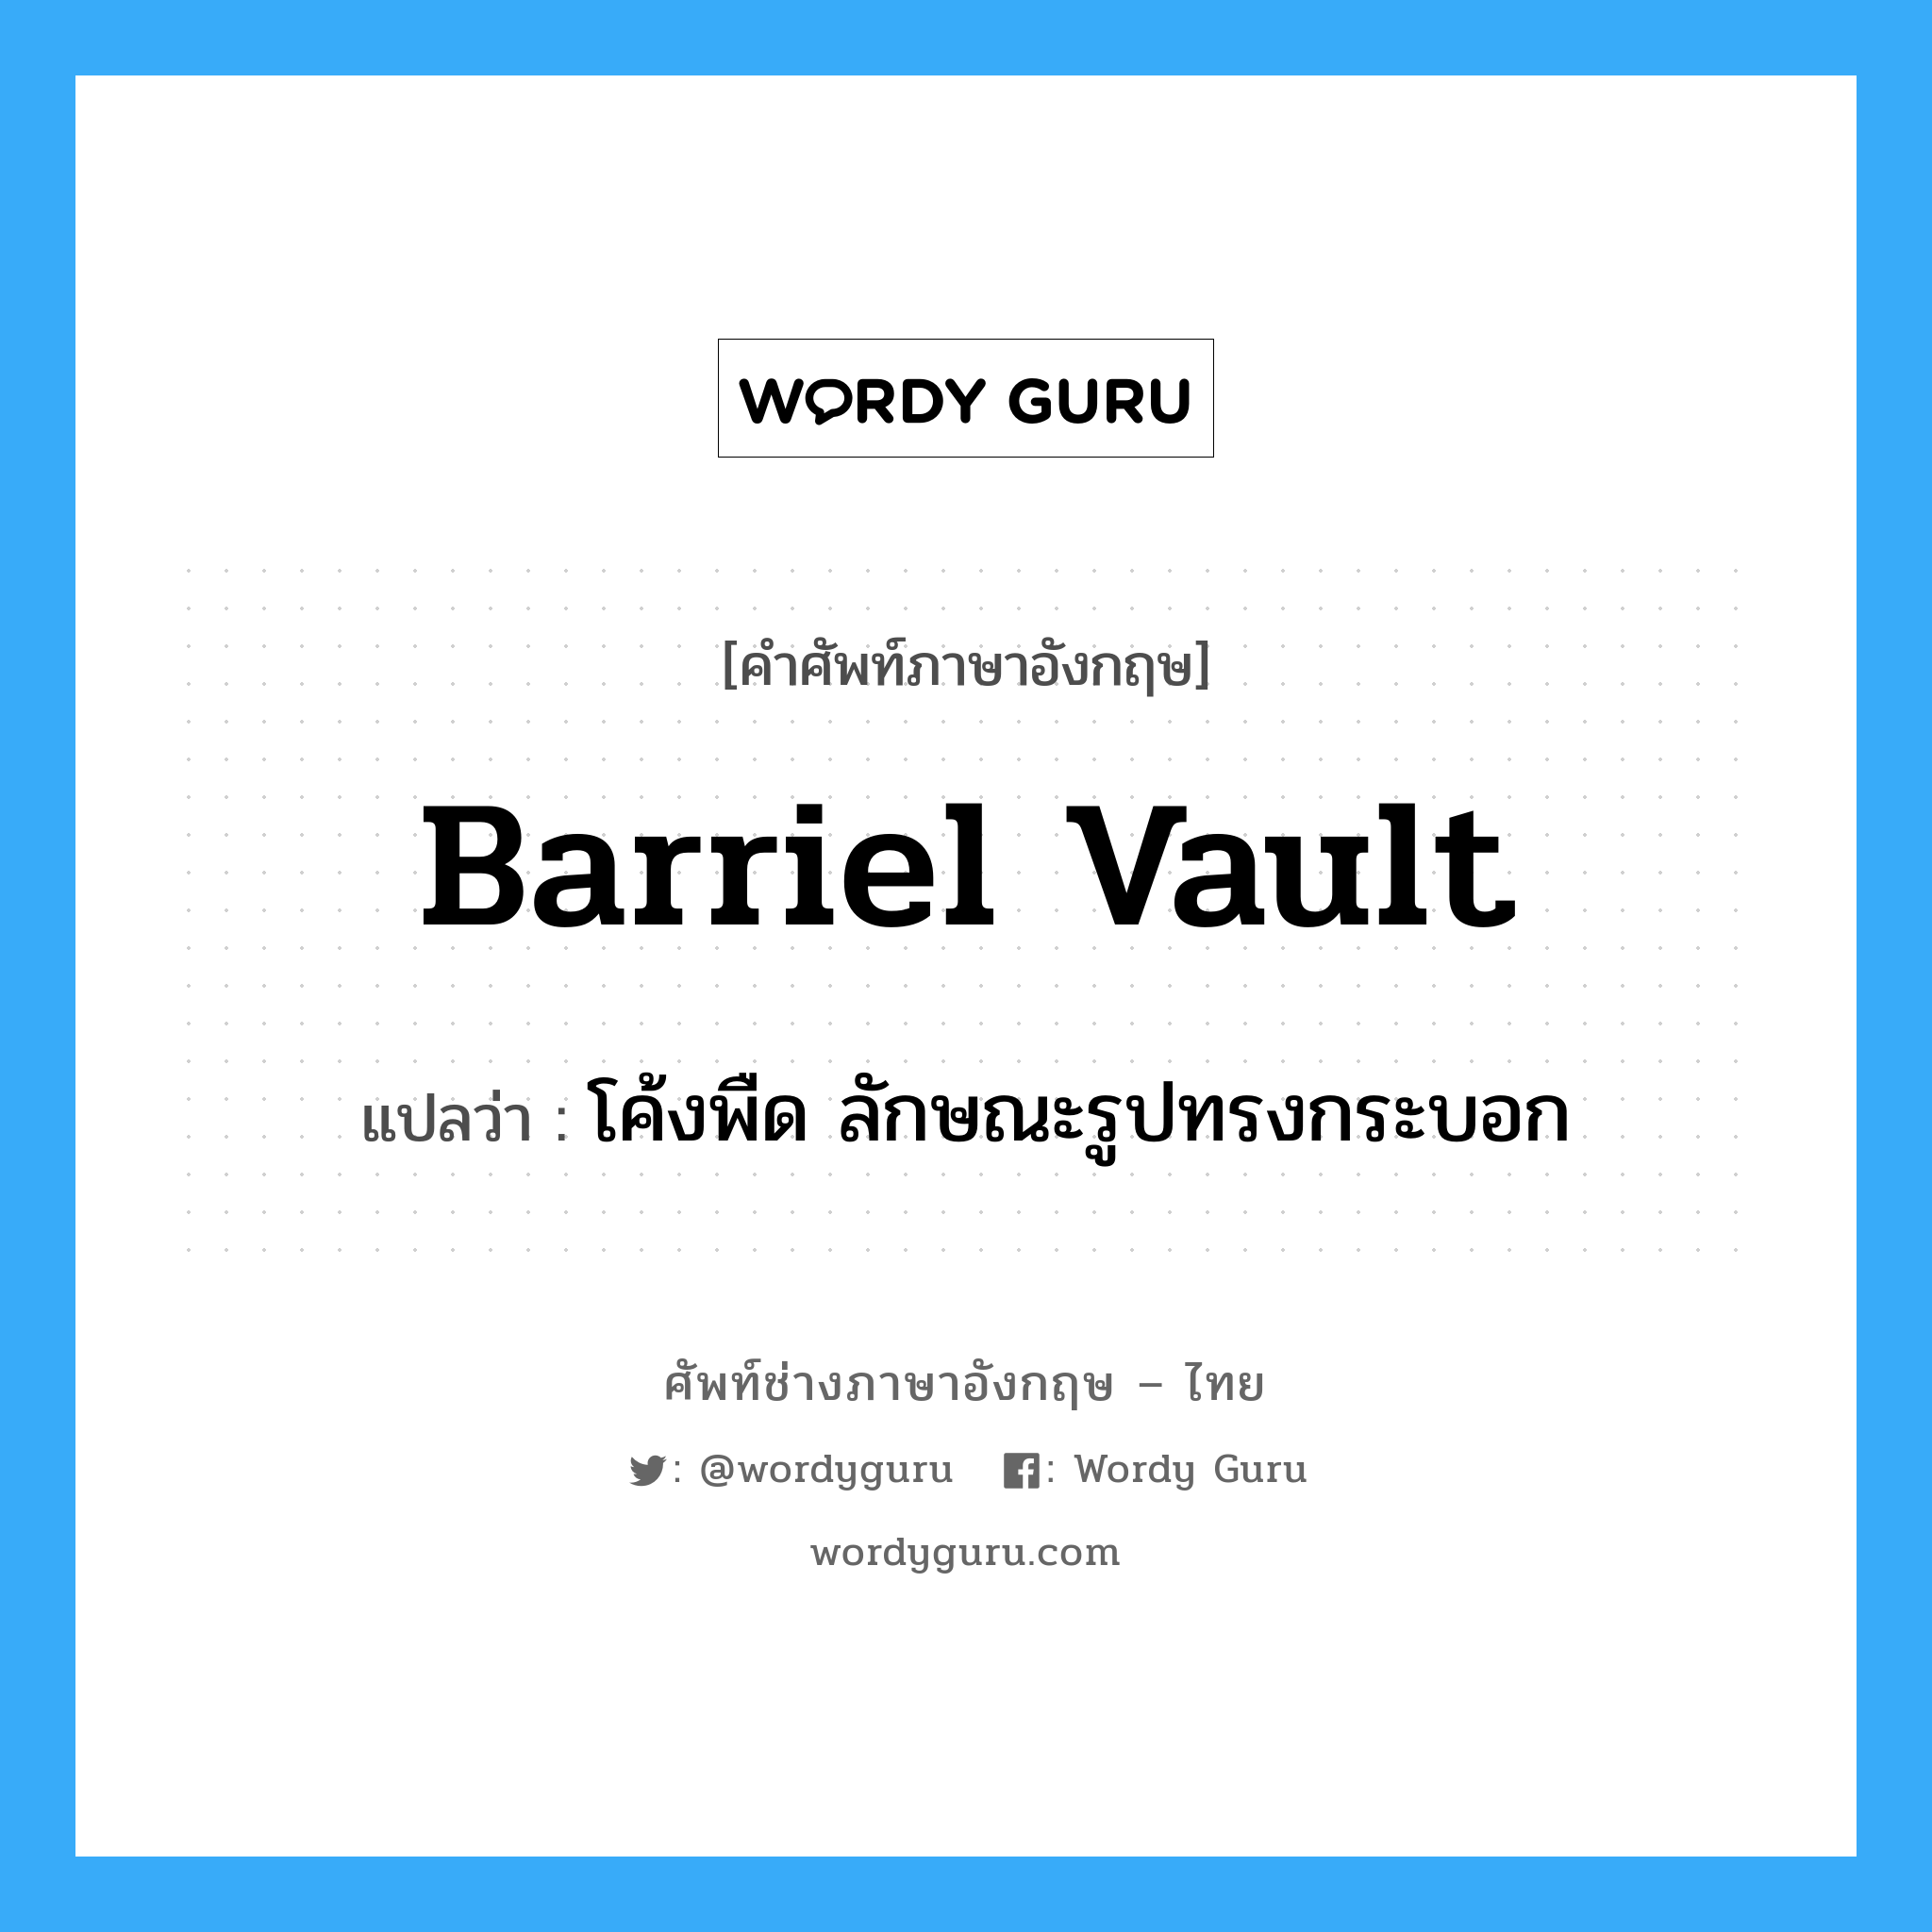 barriel vault แปลว่า?, คำศัพท์ช่างภาษาอังกฤษ - ไทย barriel vault คำศัพท์ภาษาอังกฤษ barriel vault แปลว่า โค้งพืด ลักษณะรูปทรงกระบอก